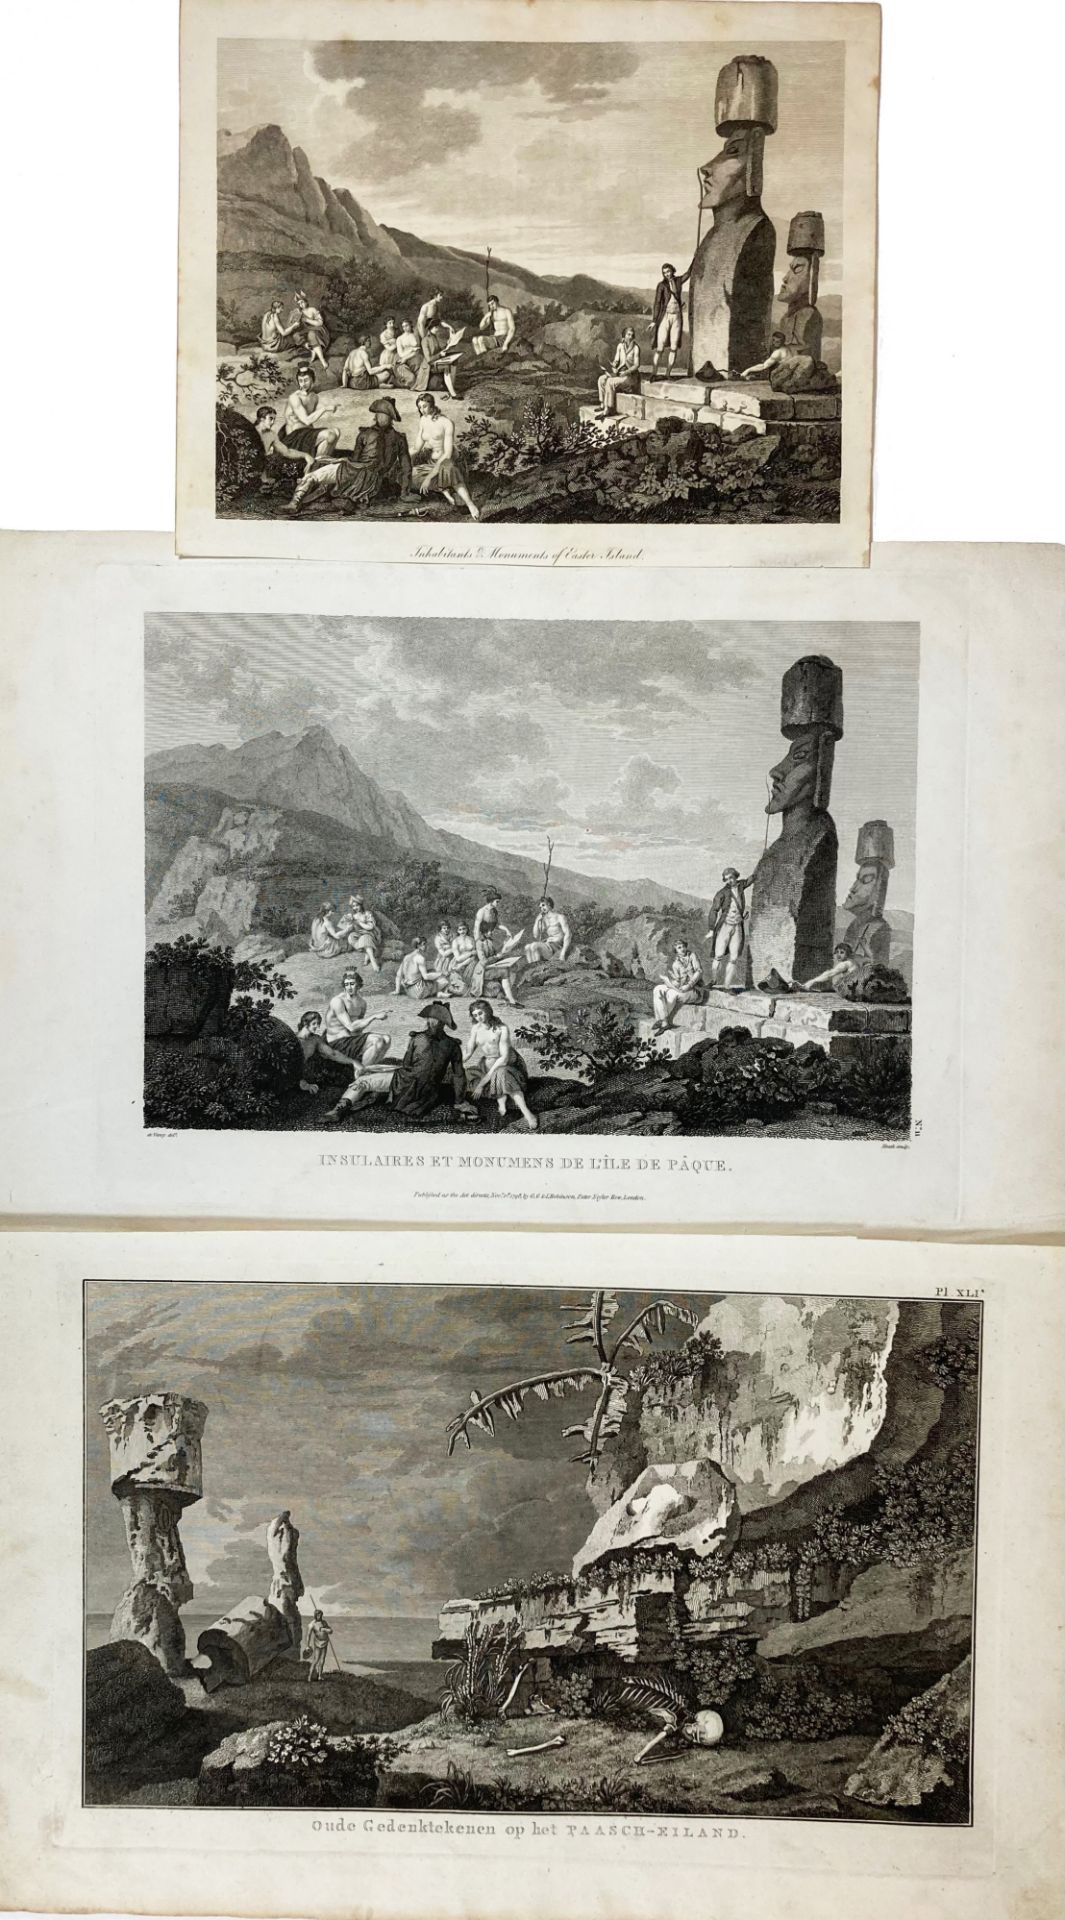 PACIFIC/EASTER ISLAND -- "INSULAIRES et Monumens de l'Île de Pâque". (London, G.G